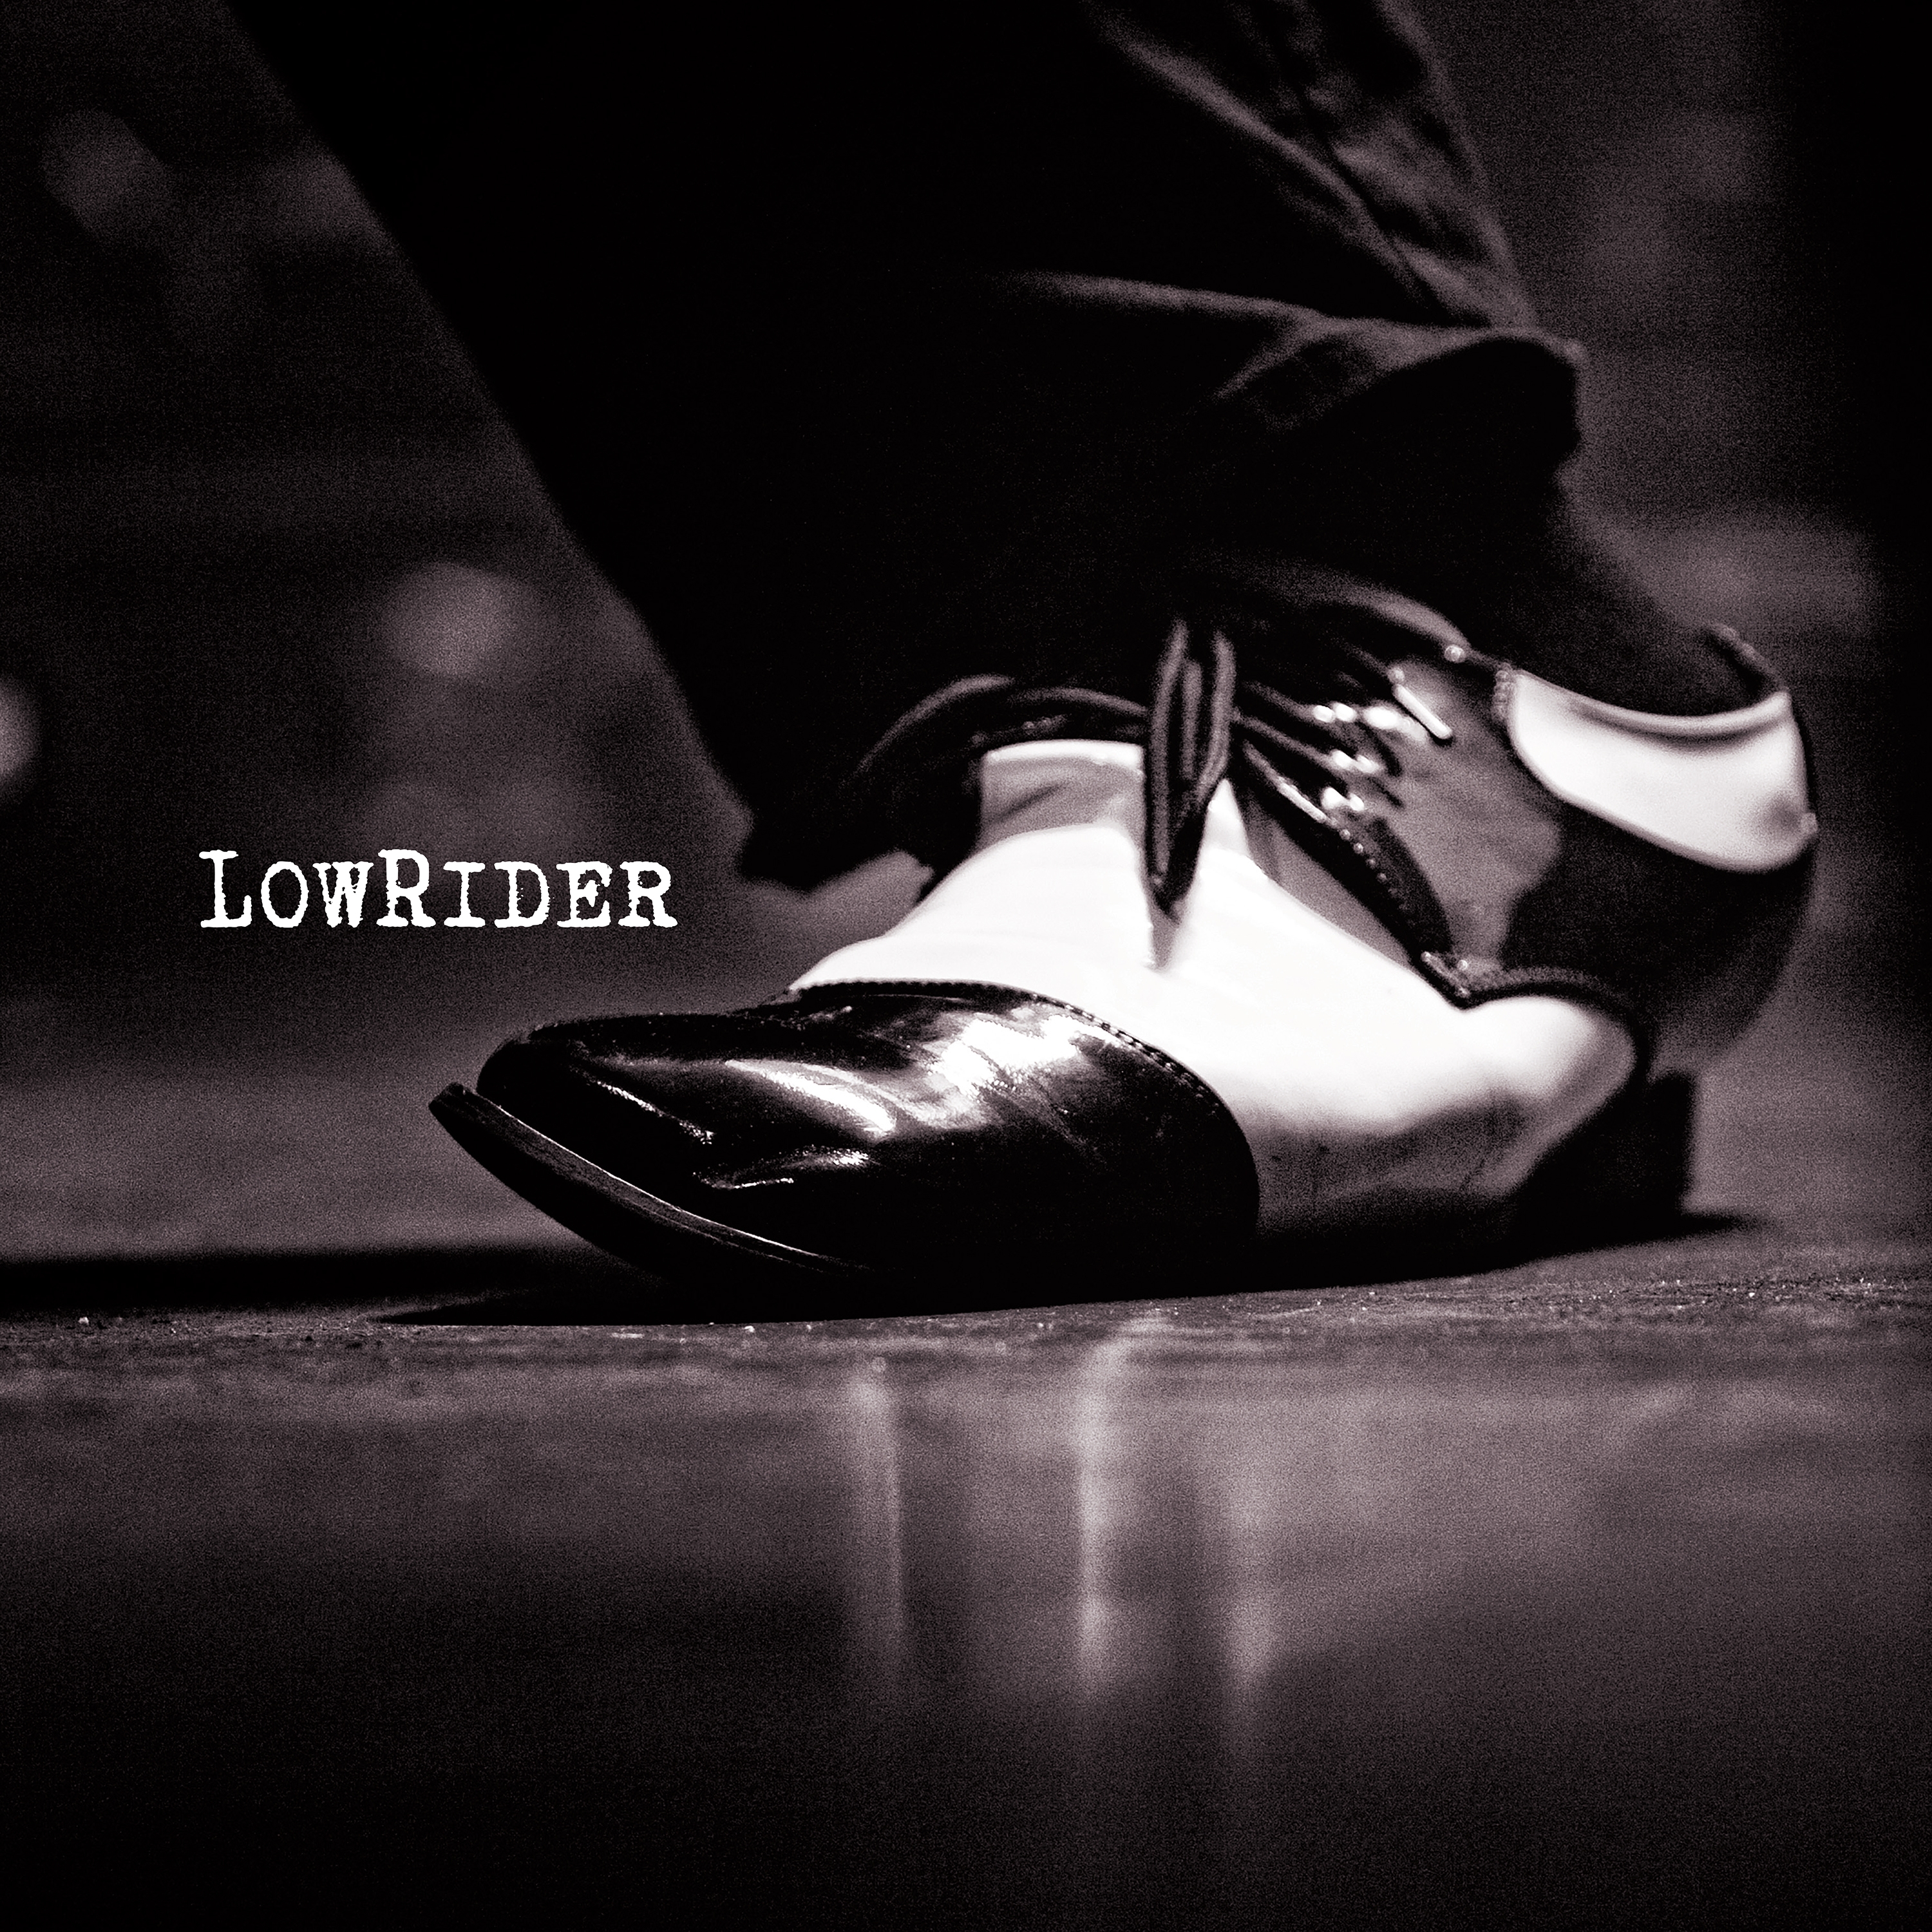 Lowrider – Lowrider